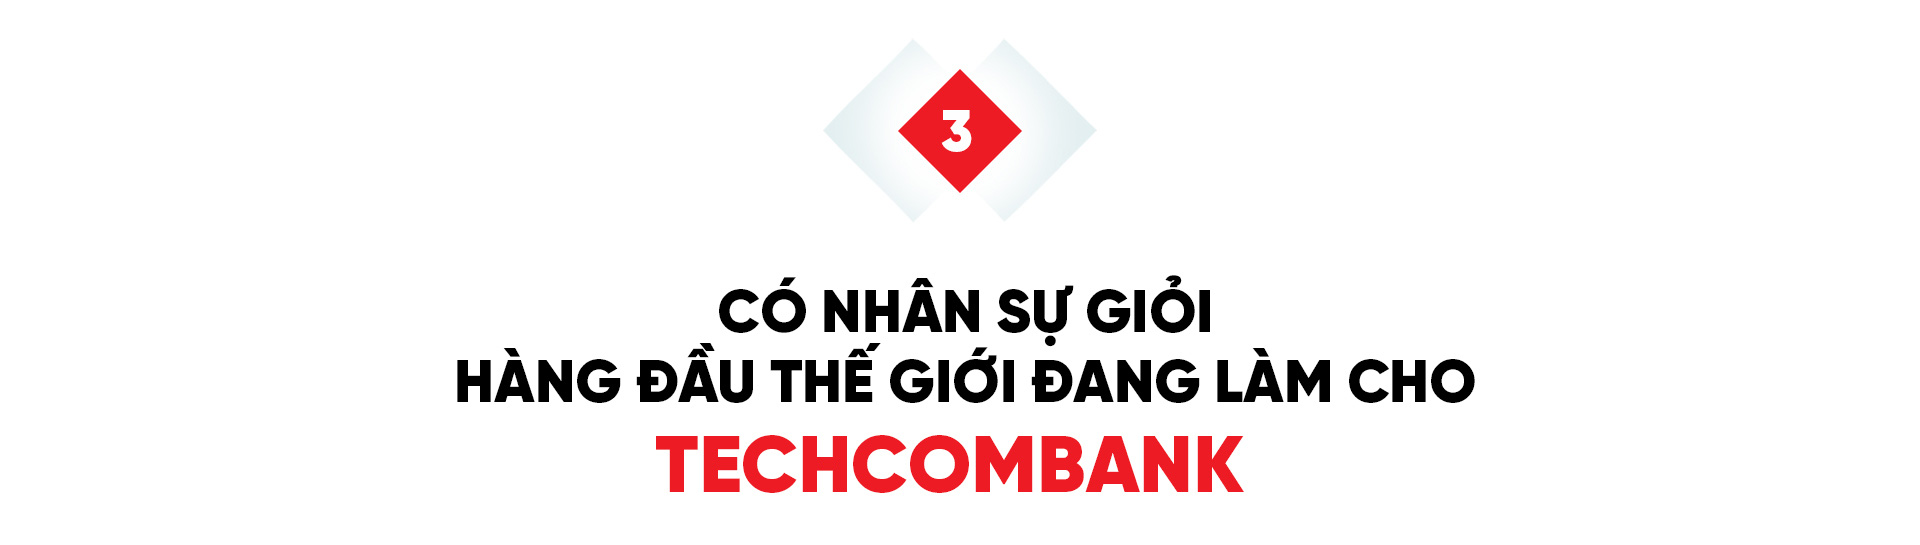 Techcombank khẳng định tham vọng đứng Top 10 Đông Nam Á - Ảnh 9.